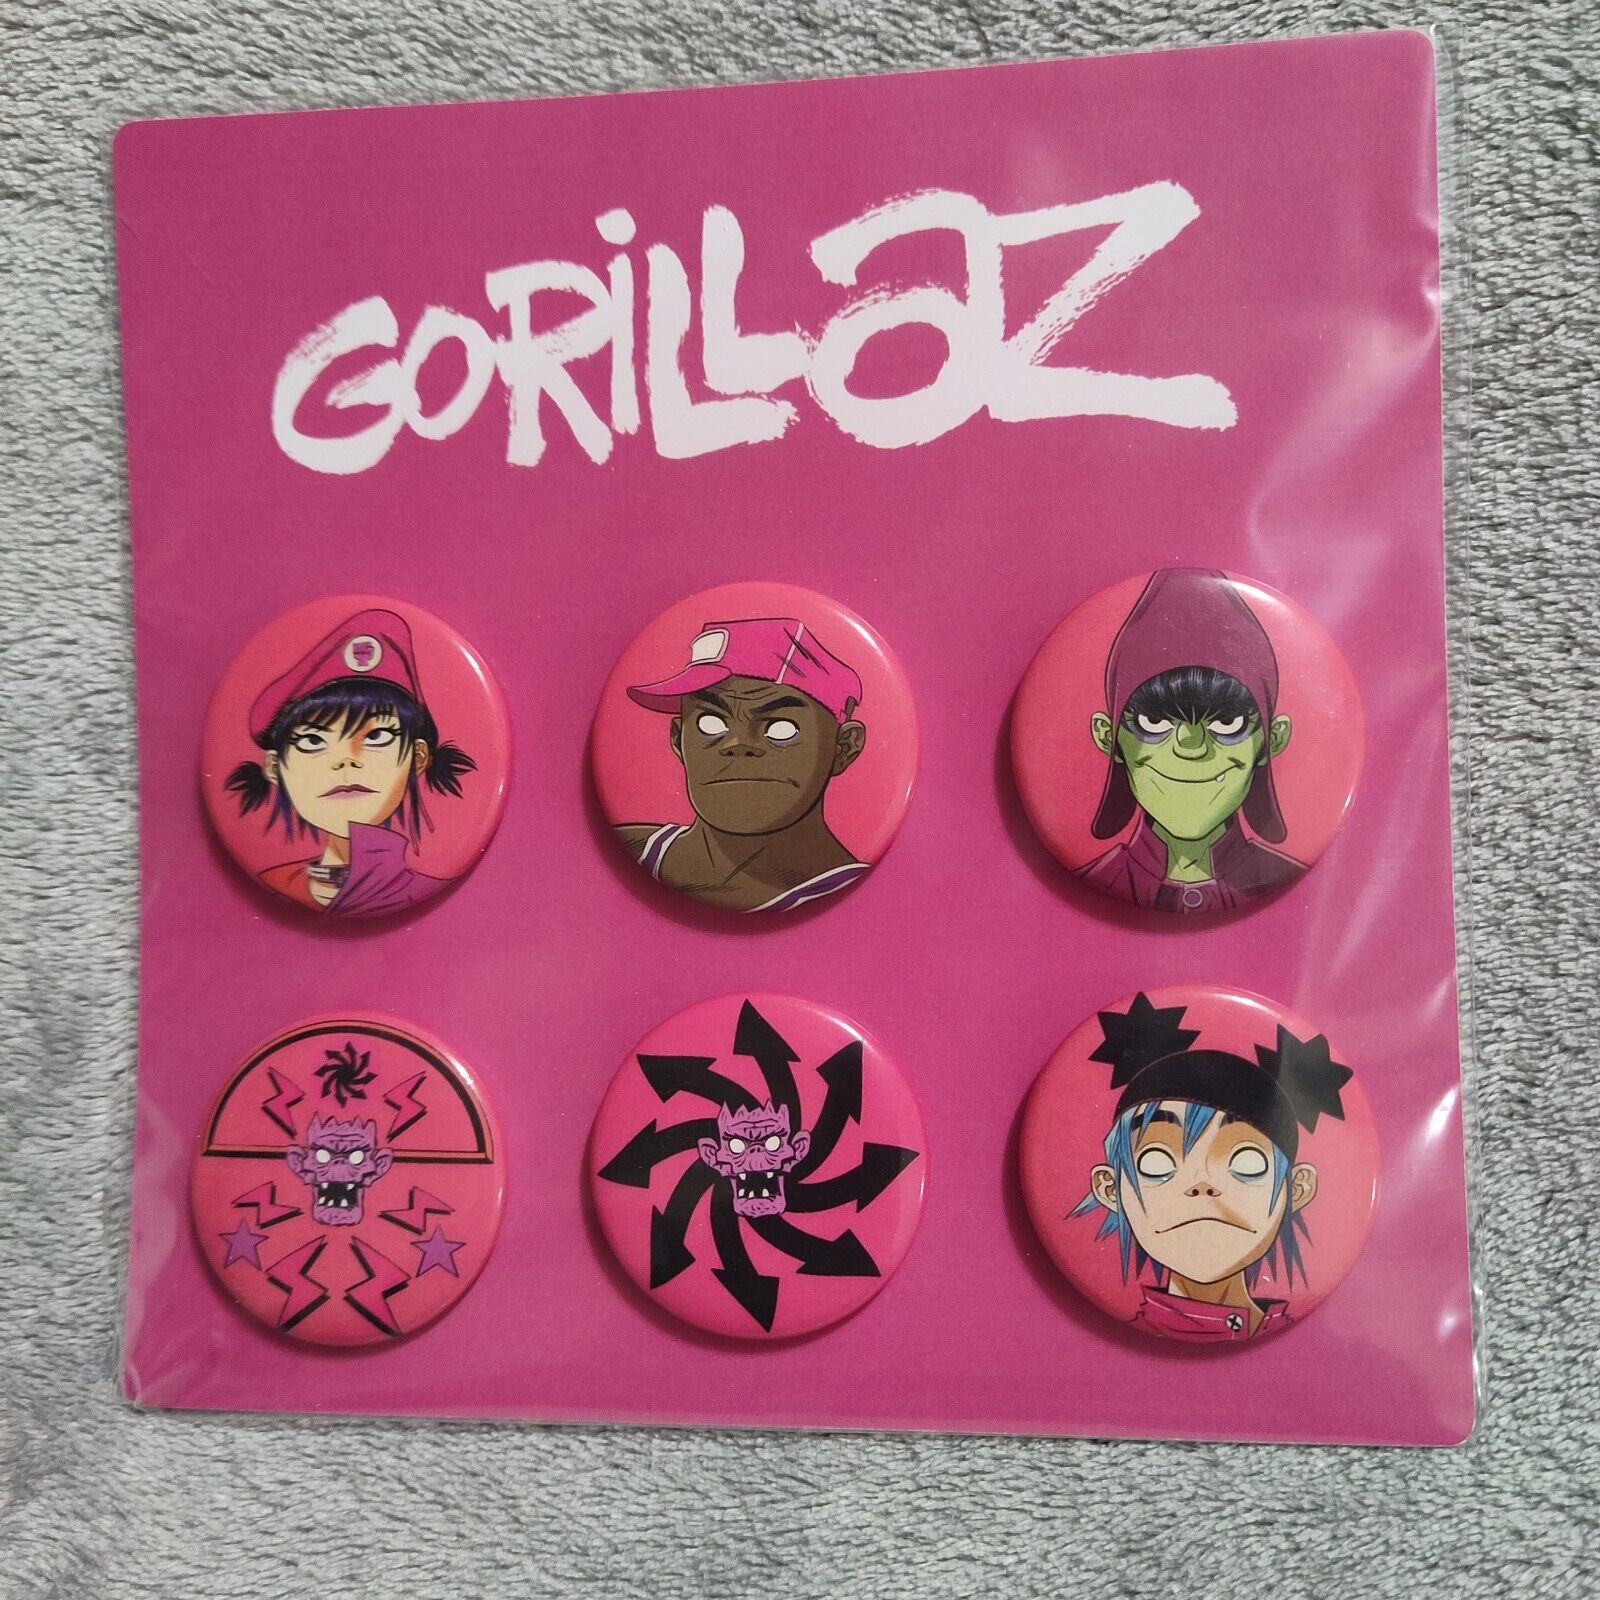 Gorillaz 2022 Us 1.5" Tour Buttons Pins - Cracker Island Official Merchandise